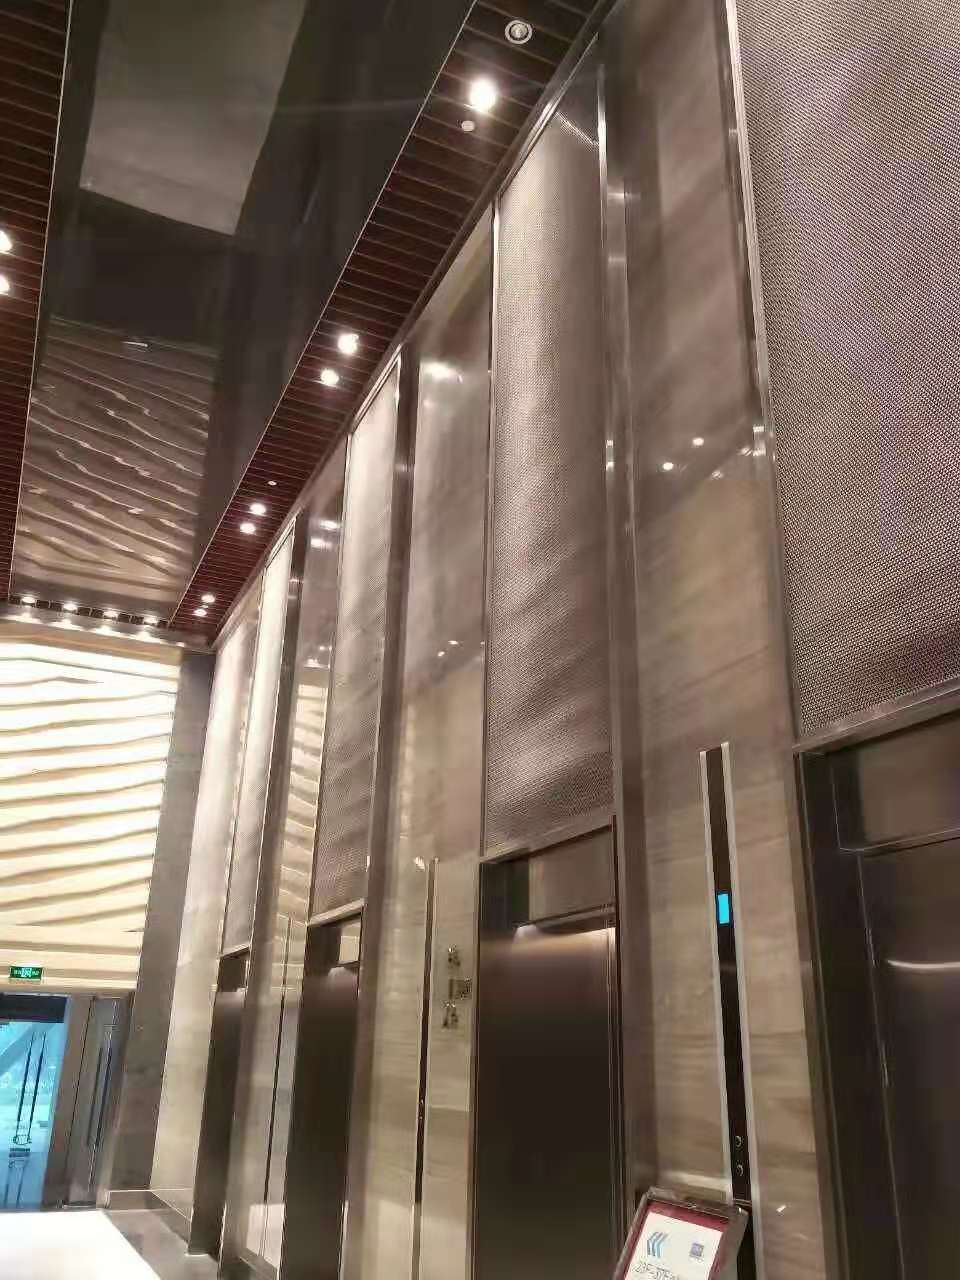 utumiaji wa vifuniko vya lifti